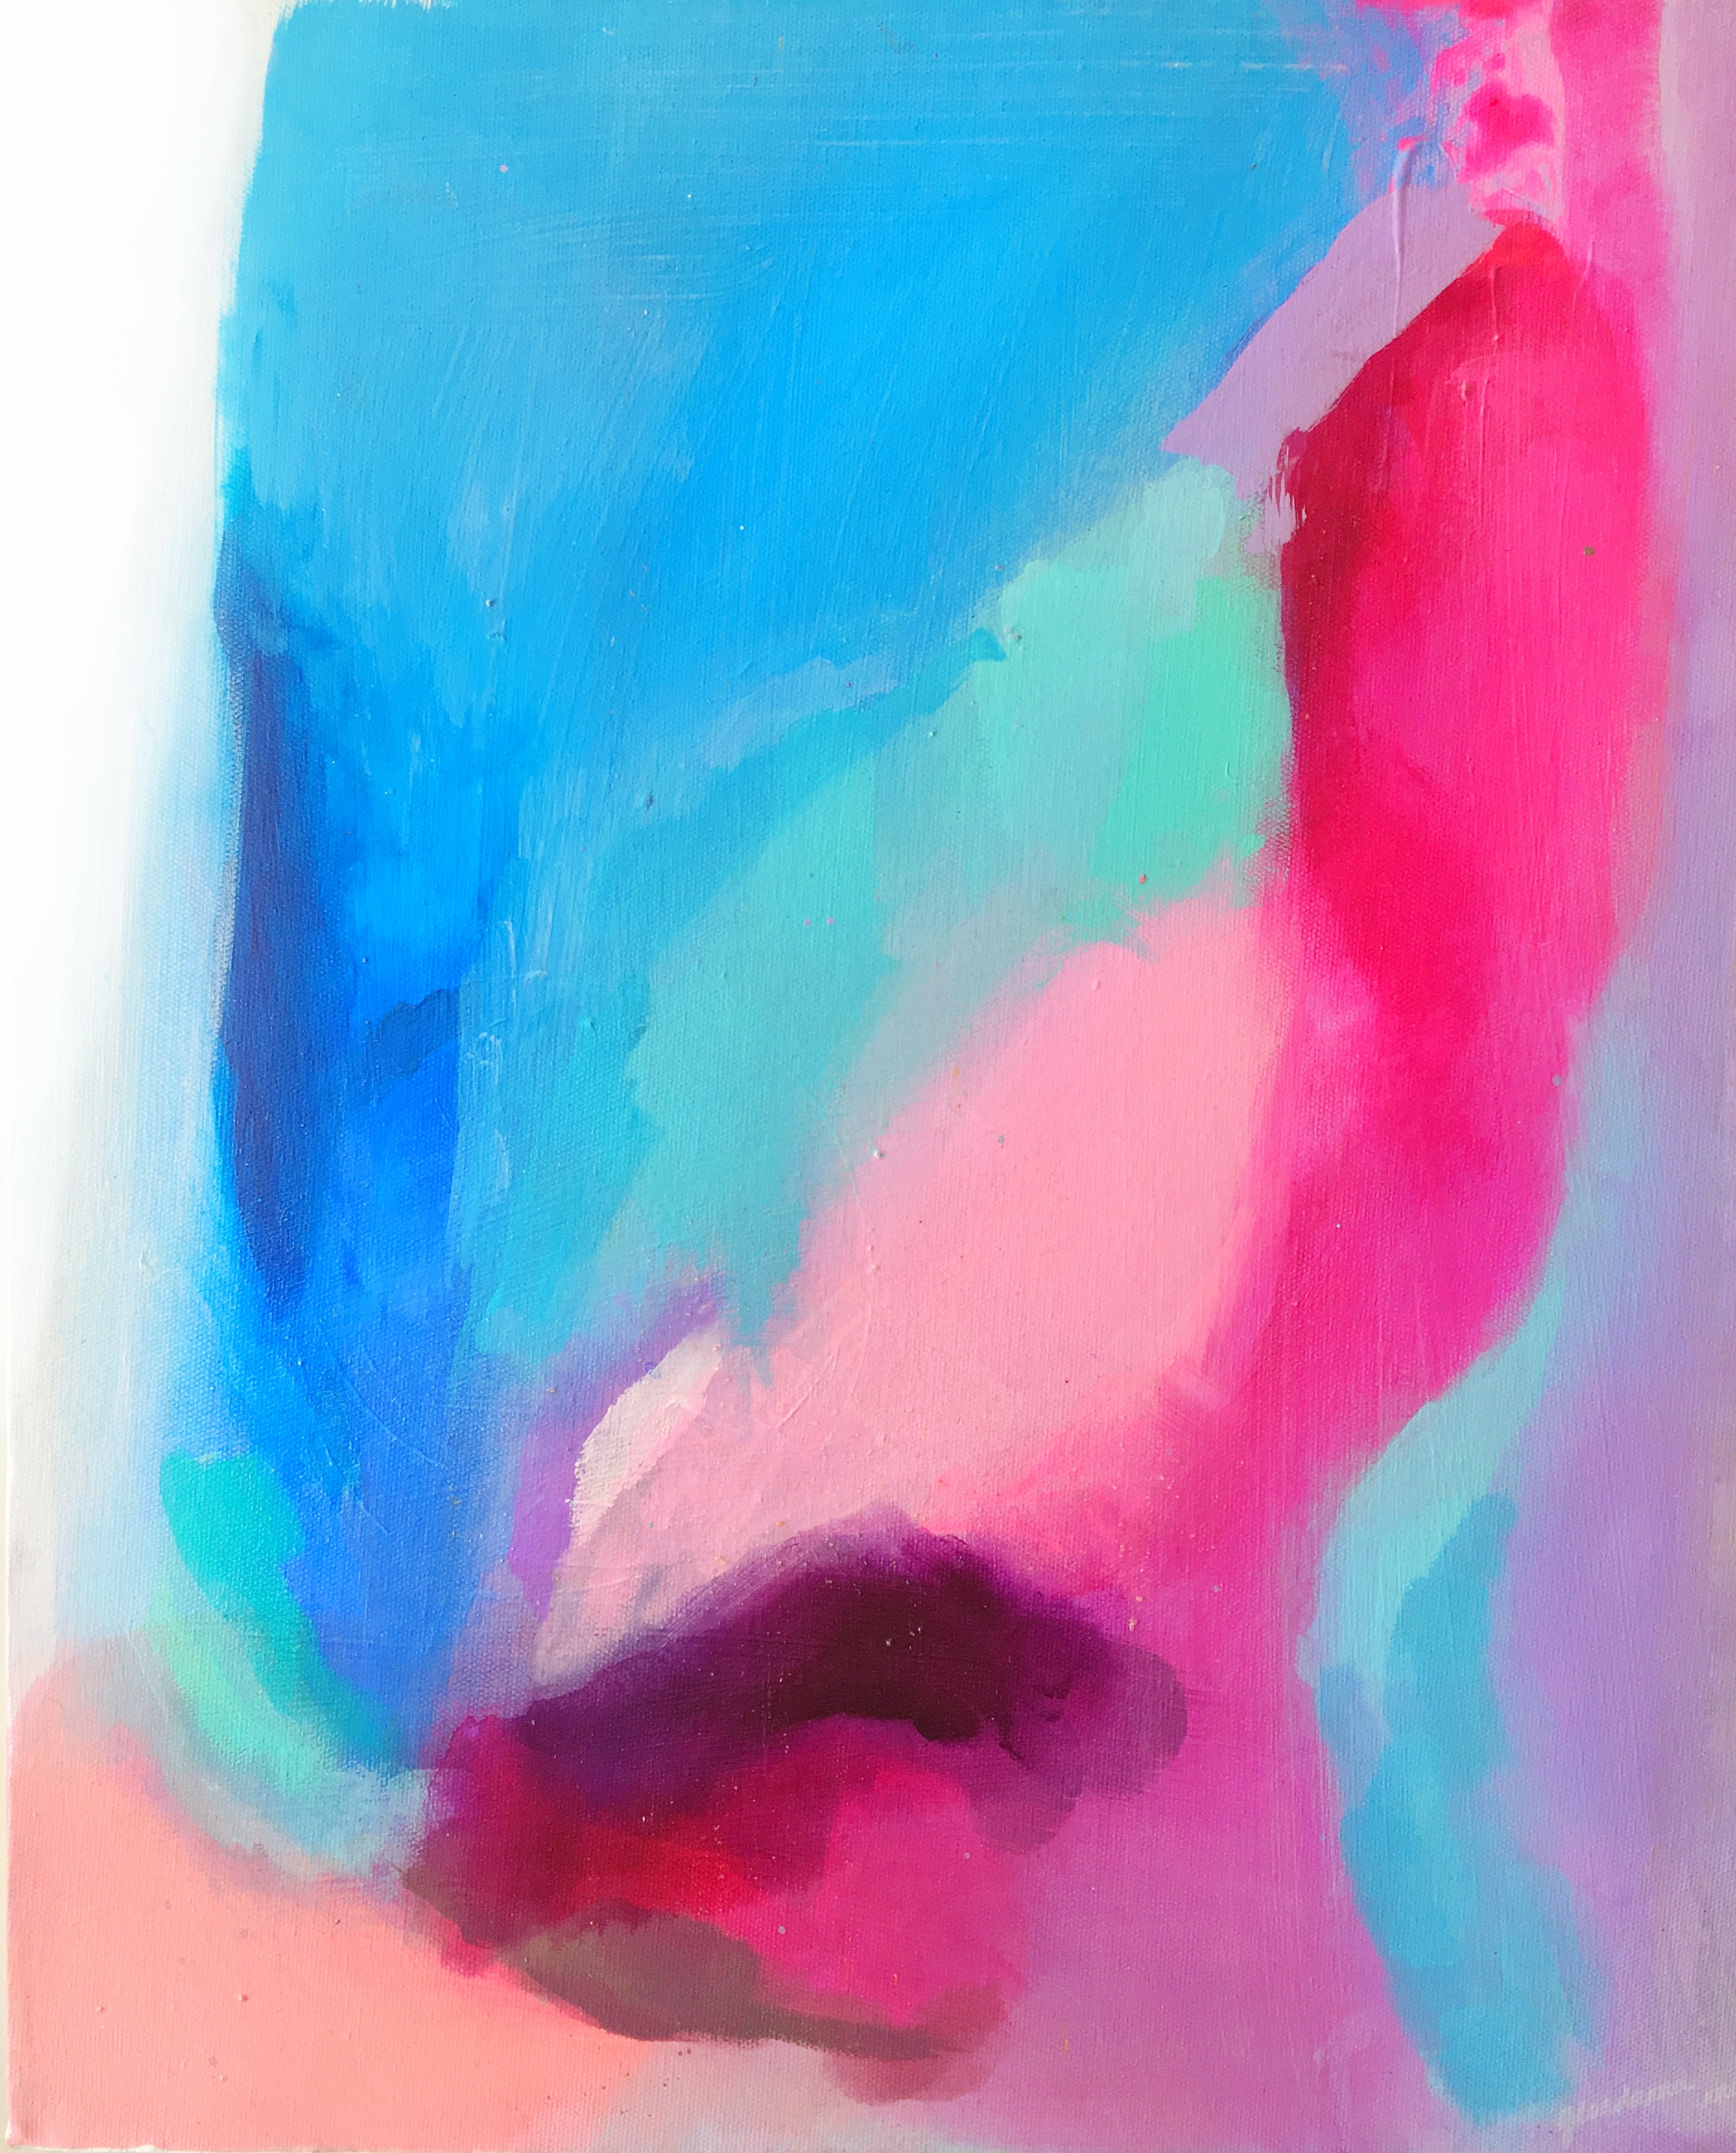 Abstrakt målning med blå och rosa.